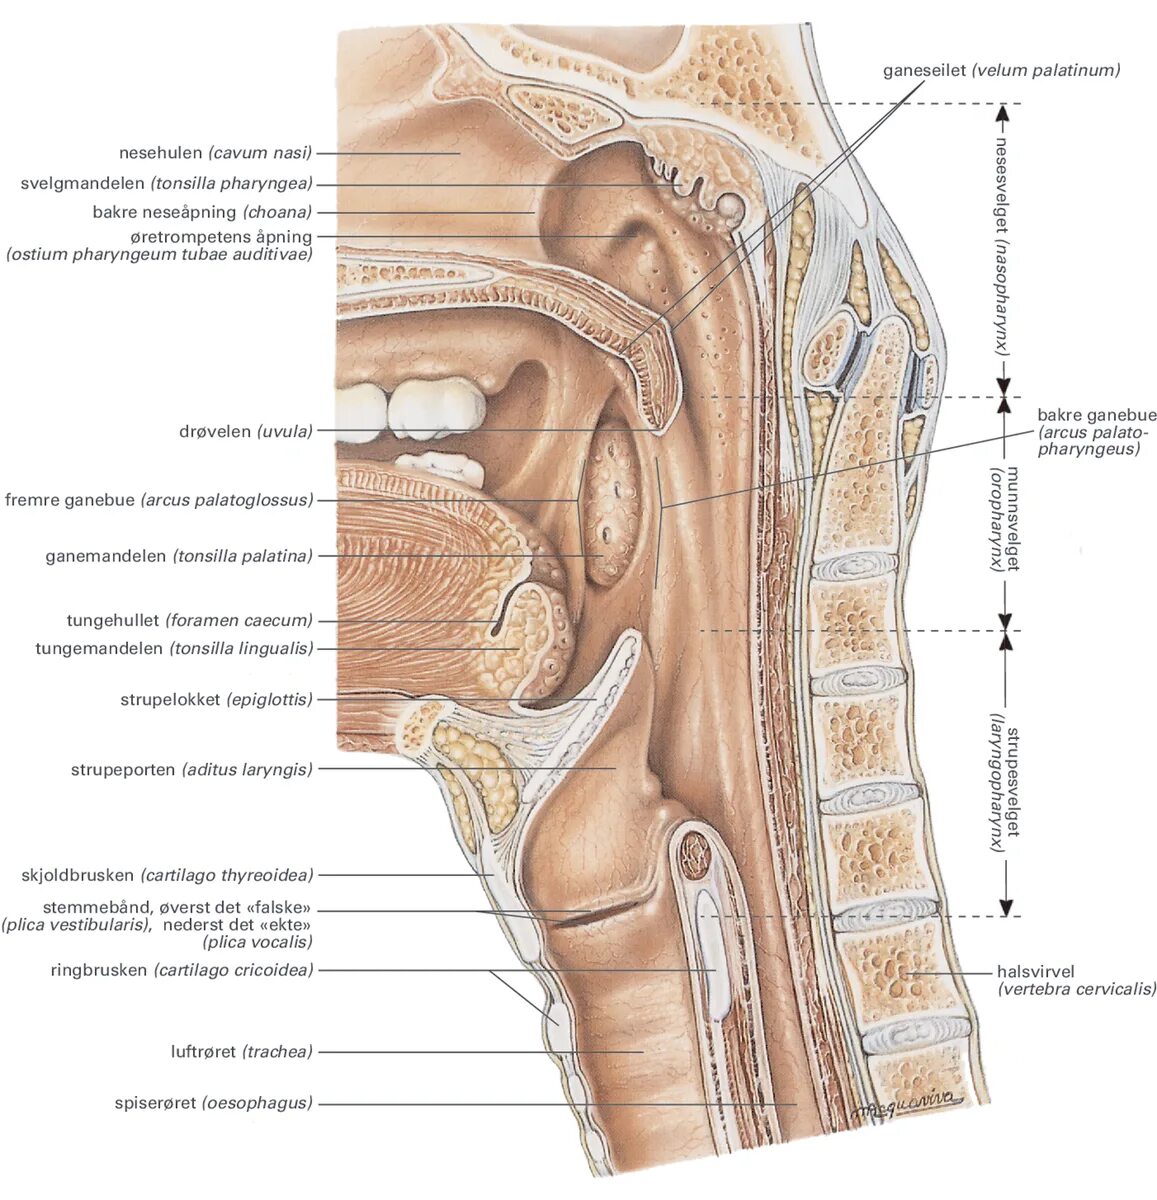 Tubae auditivae. Ostium pharyngeum tubae auditivae анатомия. Ostium pharyngeum tubae auditivae анатомия латынь. Ostium pharyngeum tubae auditivae